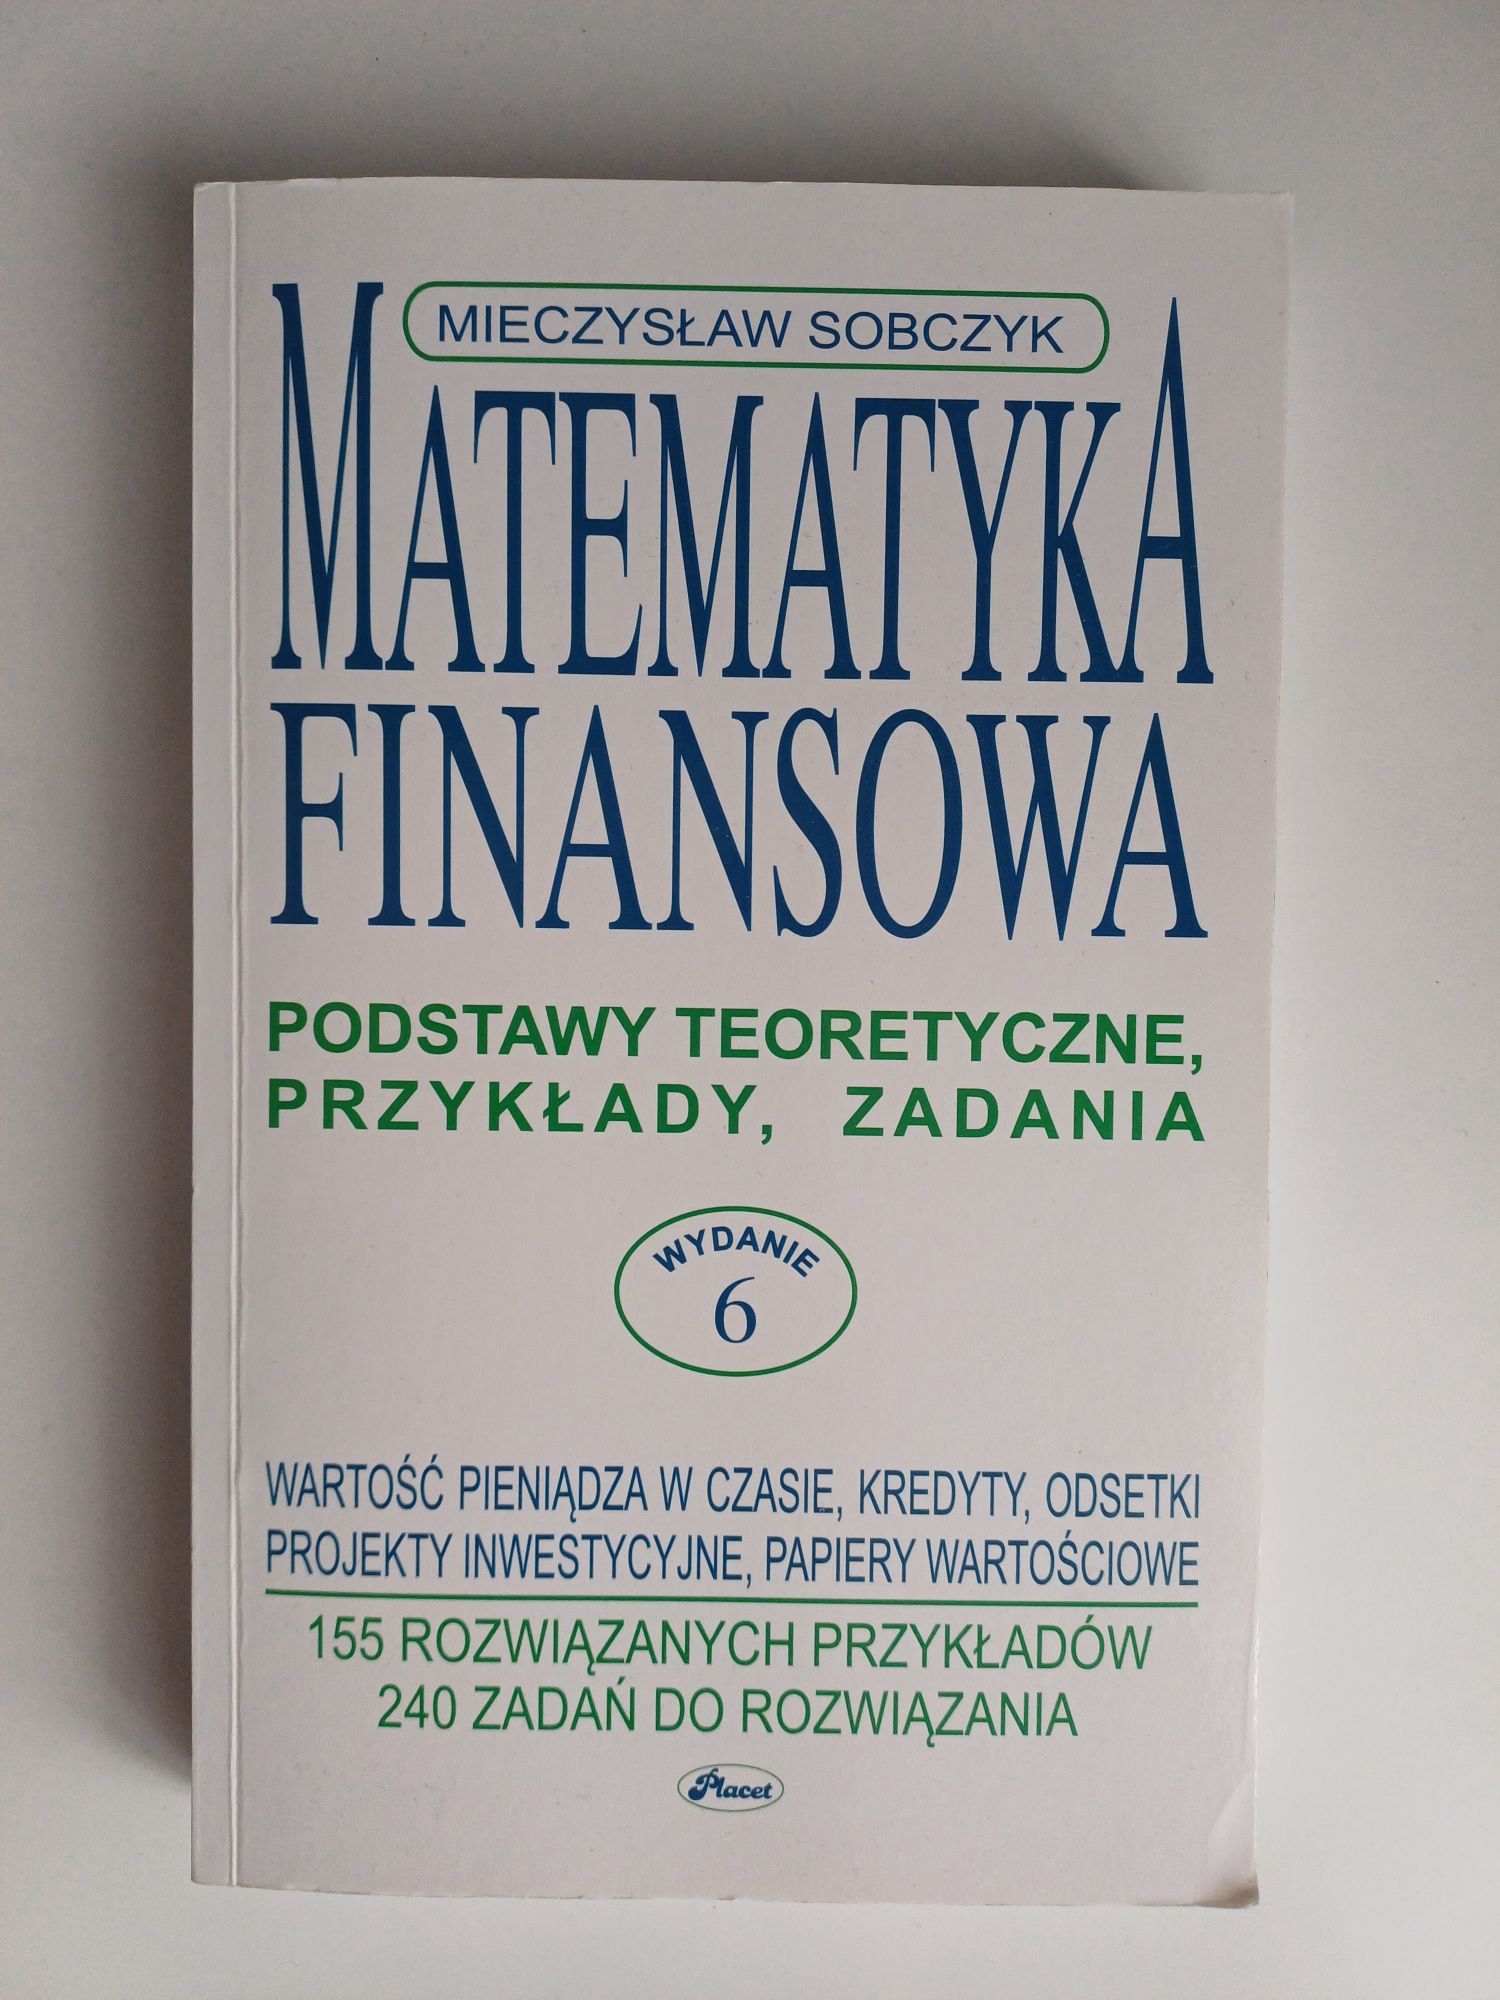 Matematyka Finansowa. Mieczysław Sobczyk
FINANSOWA